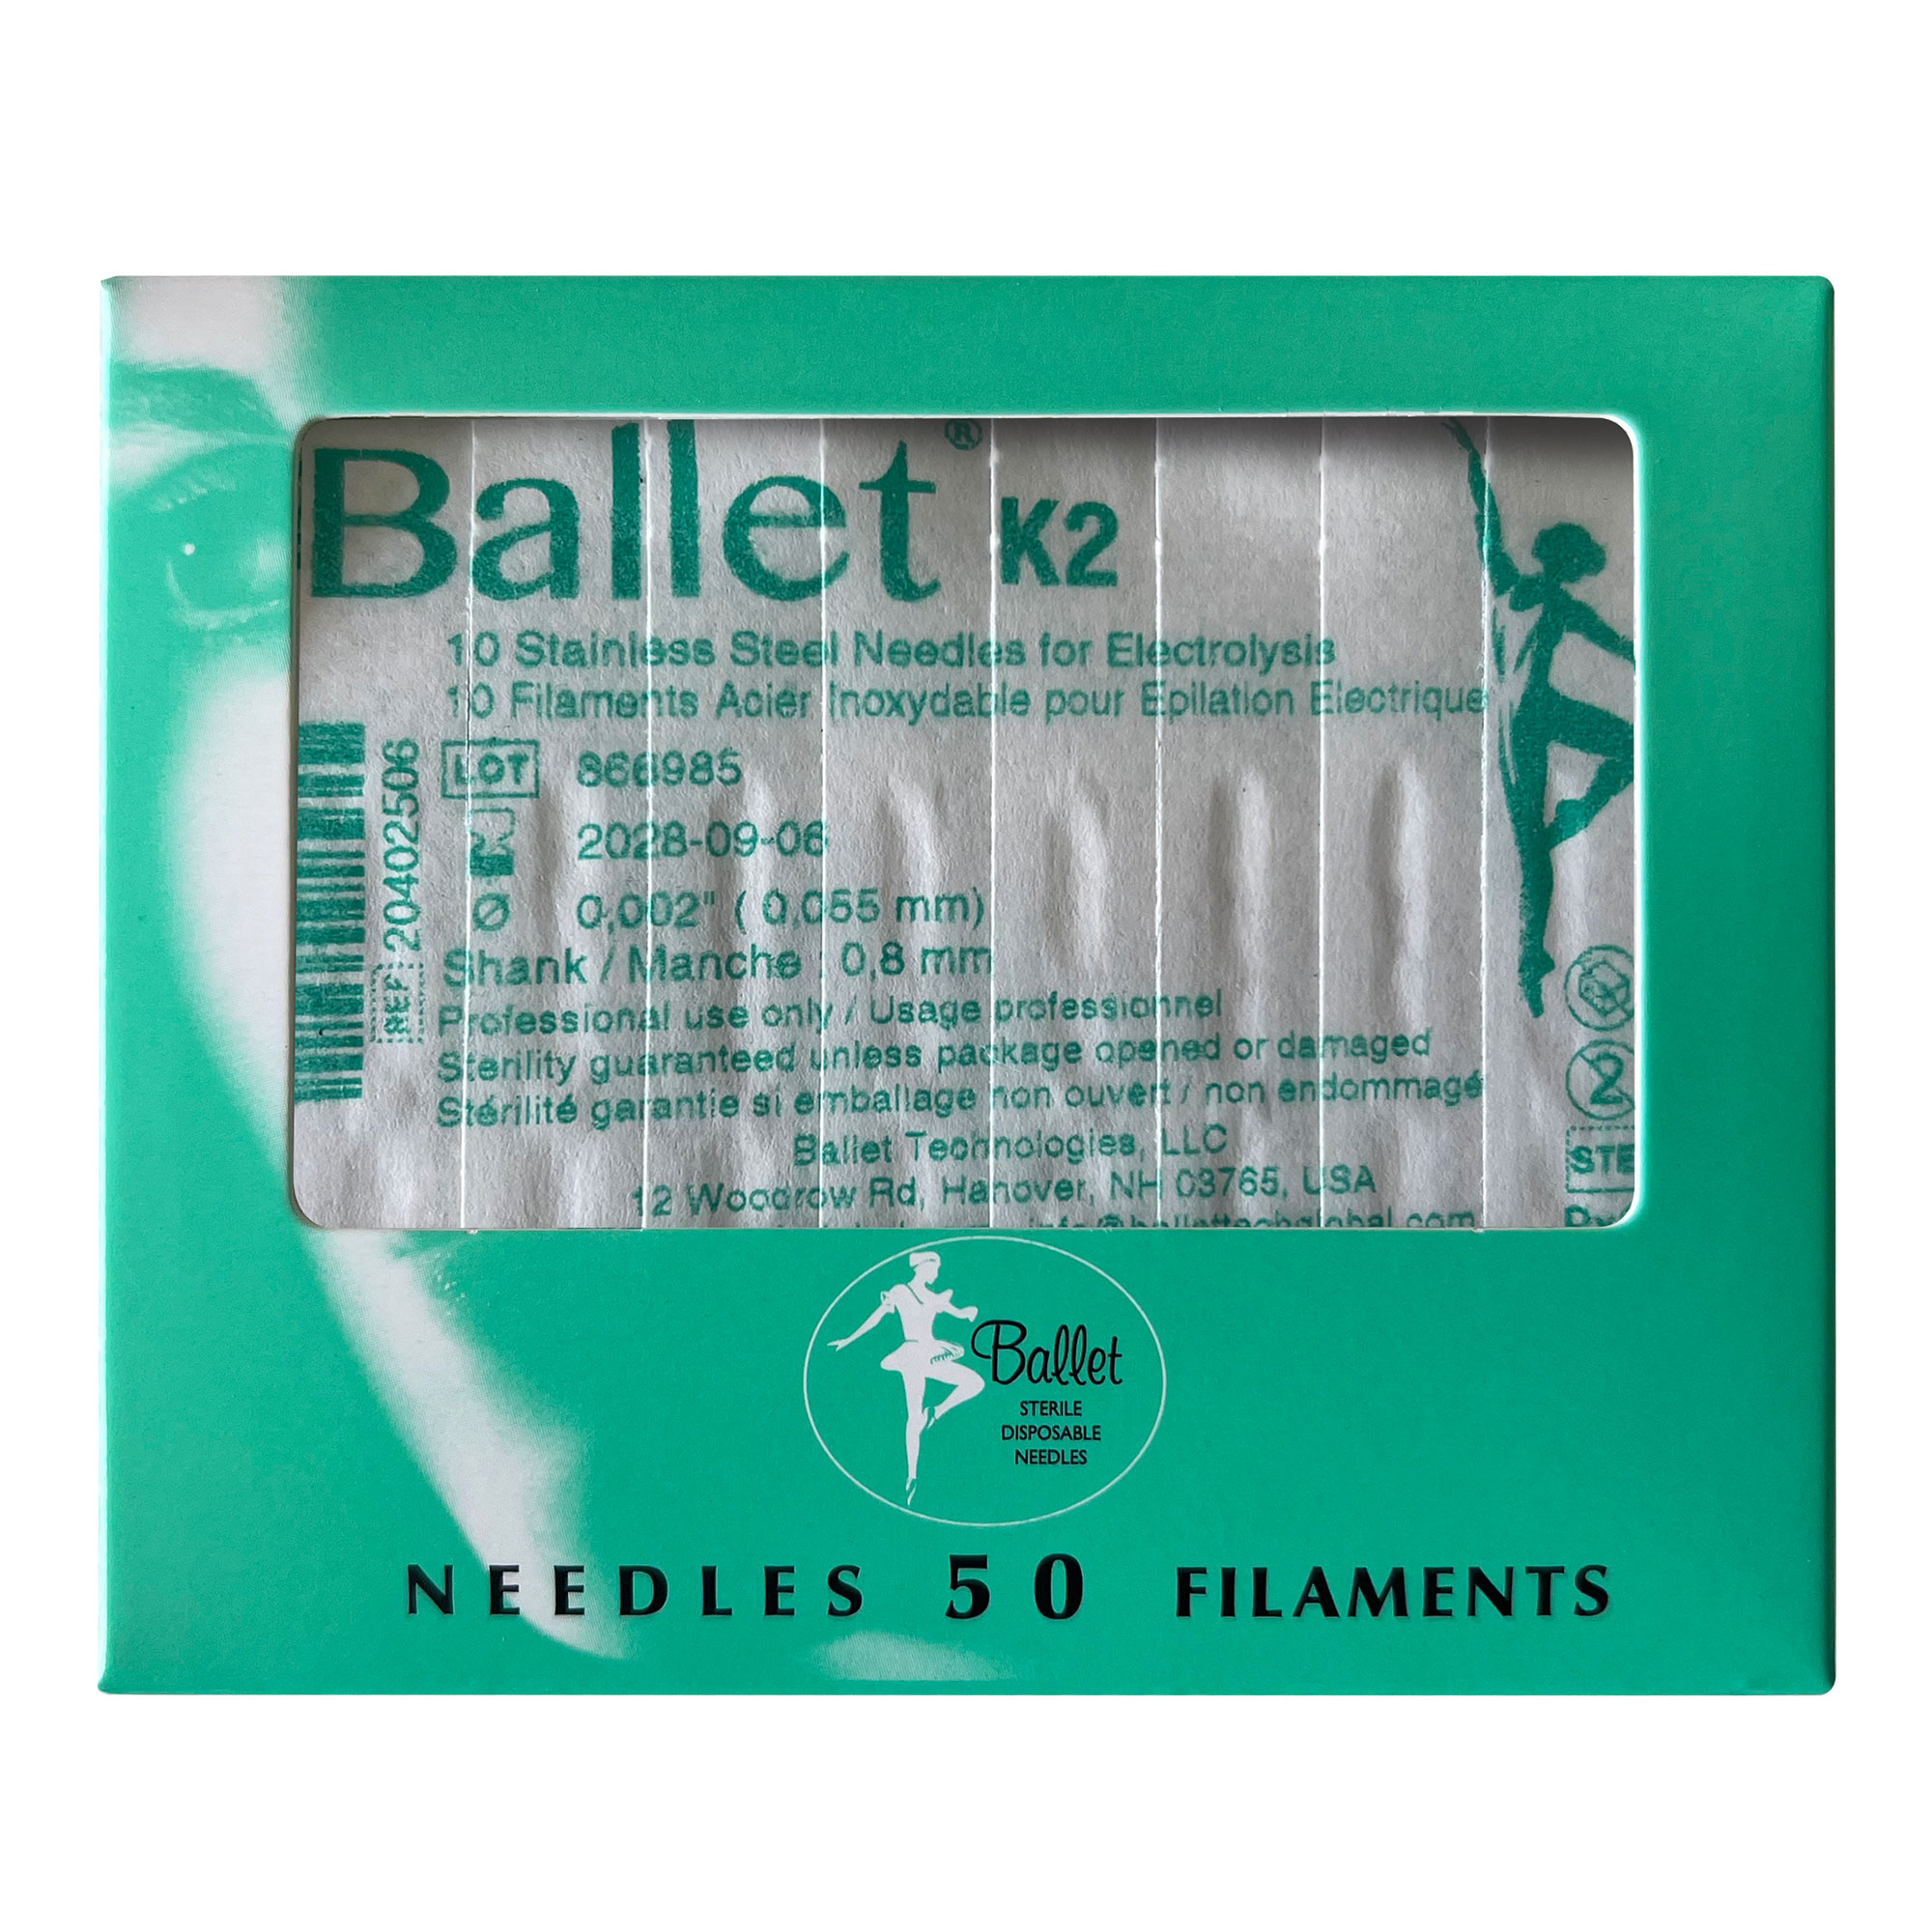 Sterile stainless steel Ballet needles for epilation 0.055 mm